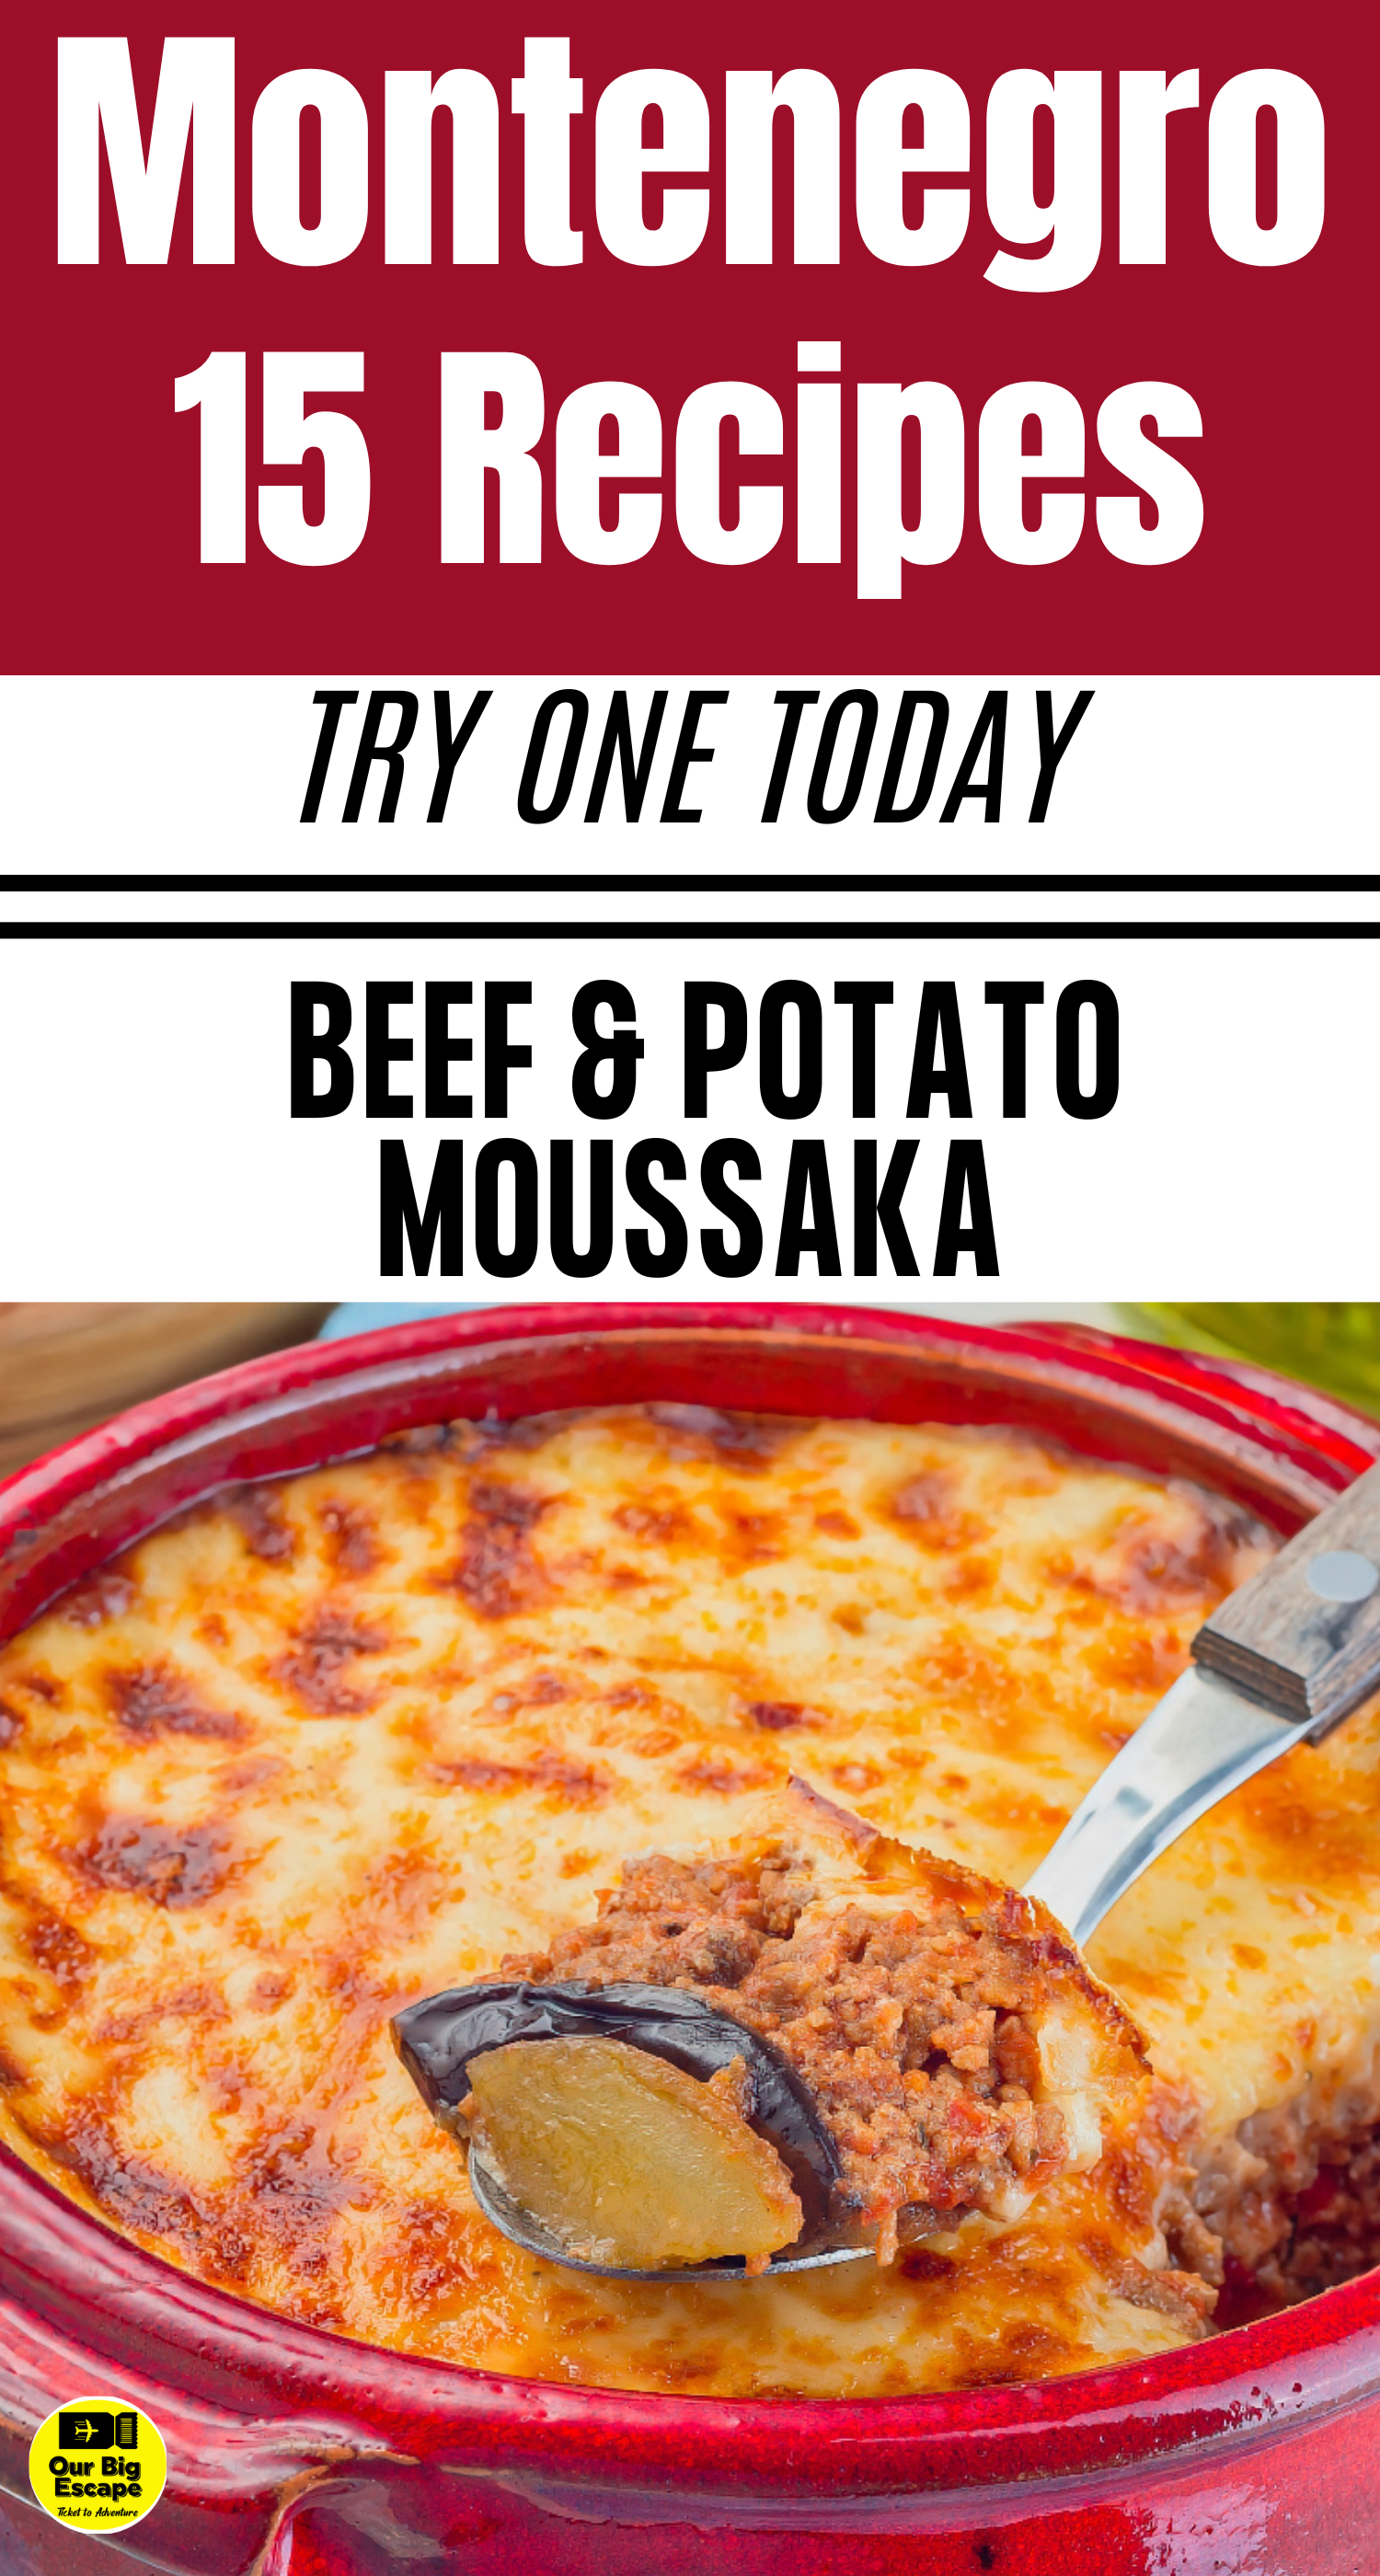 15 Montenegro Recipes - Beef and Potato Moussaka